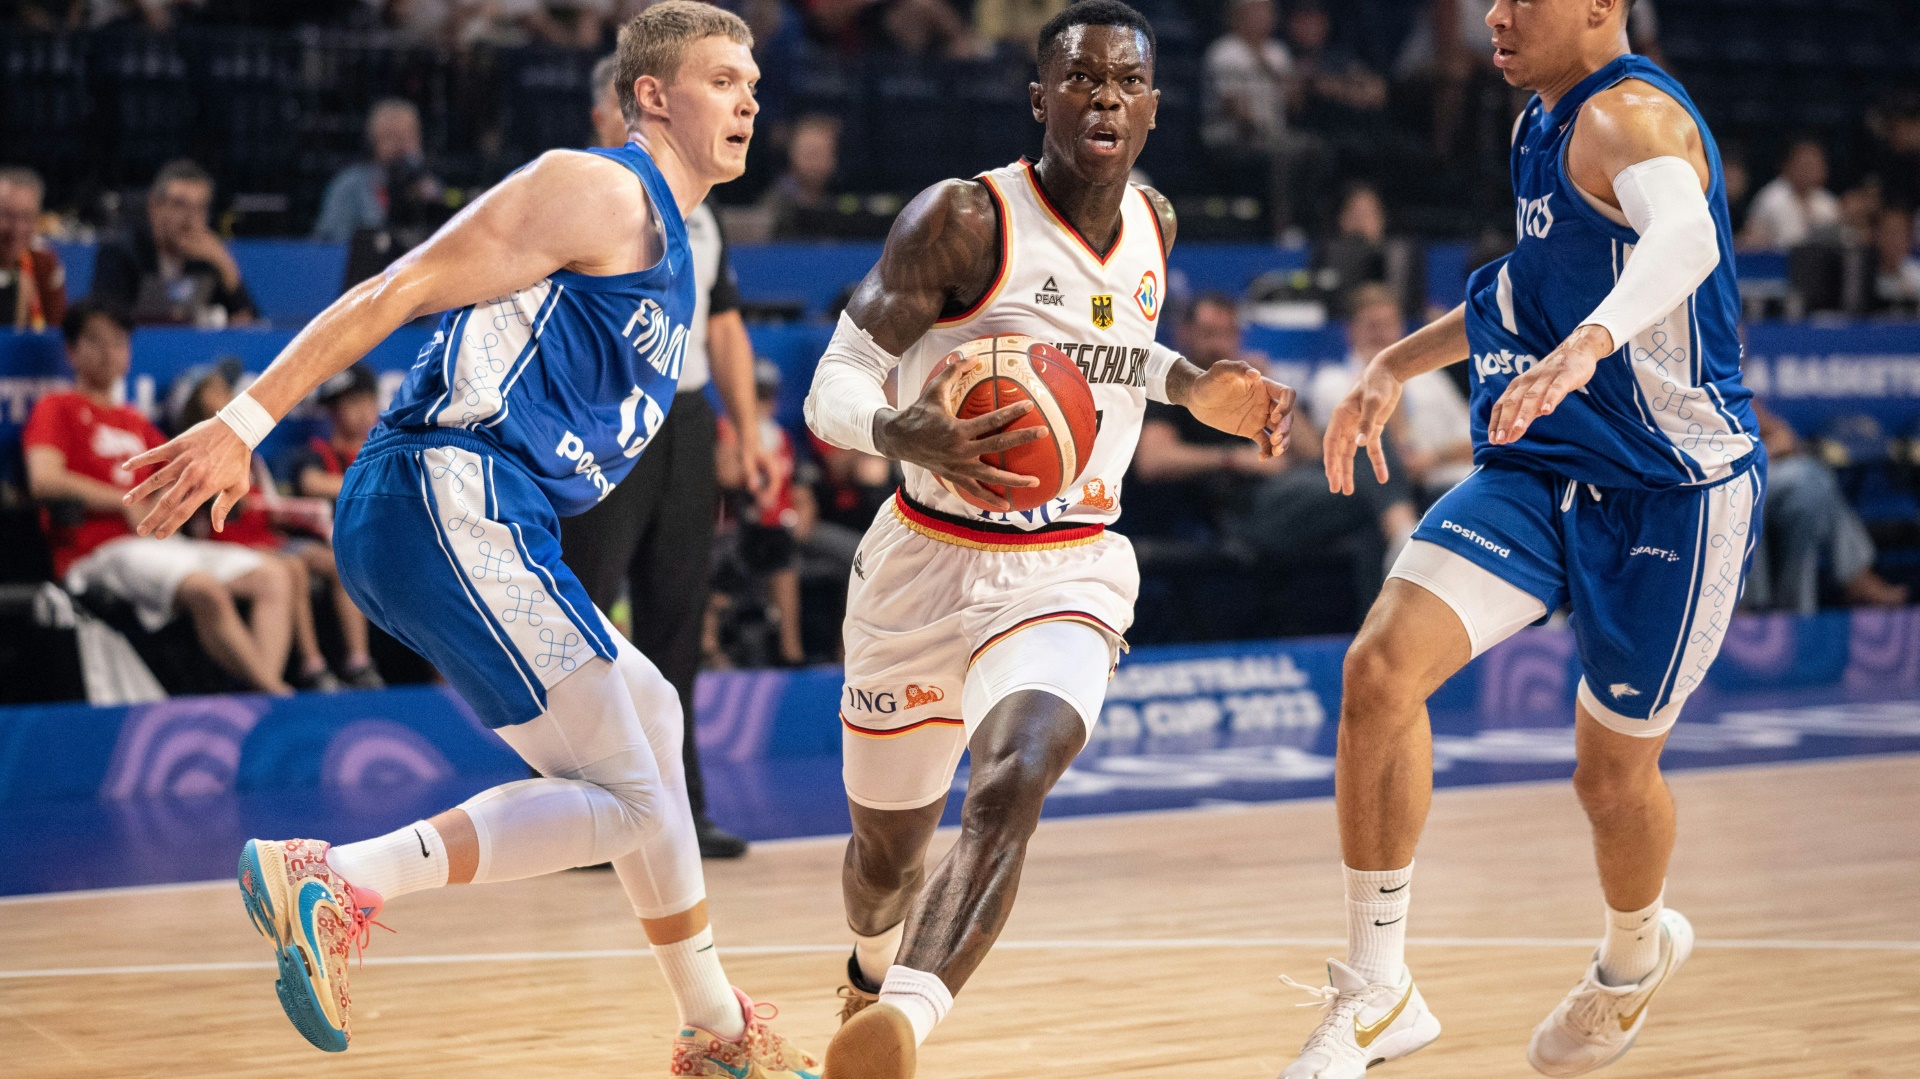 Die deutschen Basketballweltmeister treffen in der Olympia-Vorbereitung auf die Niederlande